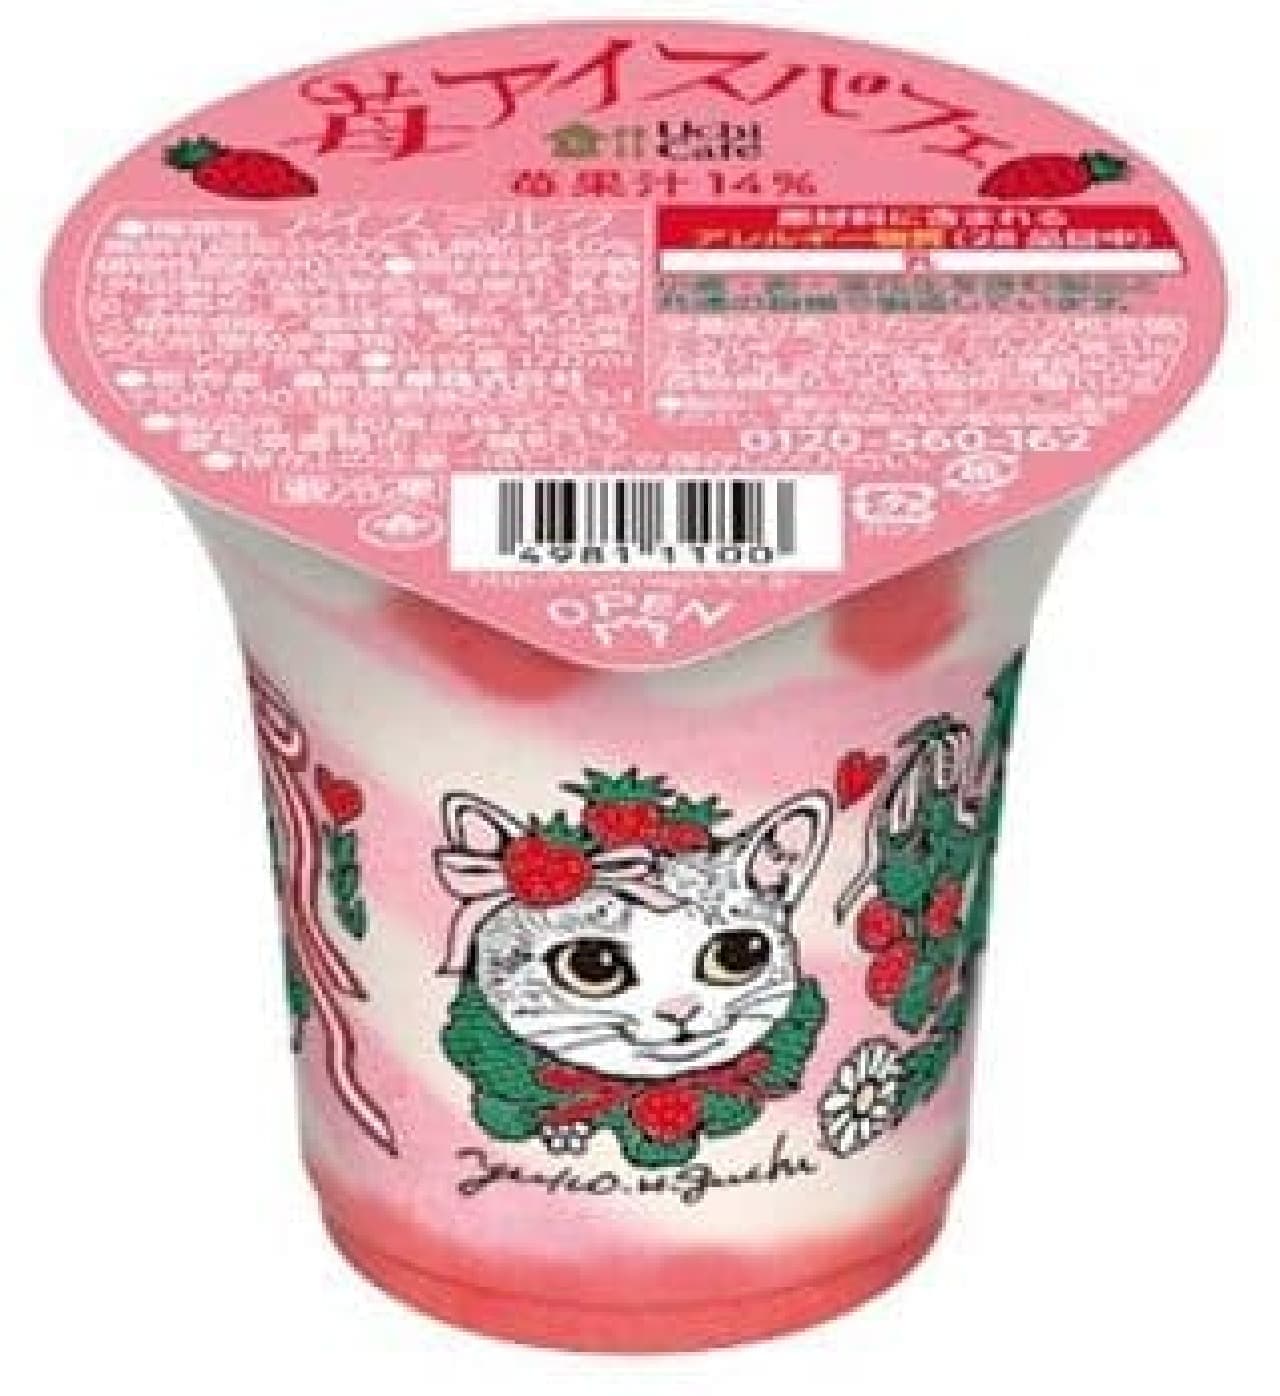 Lawson "Uchi Cafe Strawberry Ice Parfait"